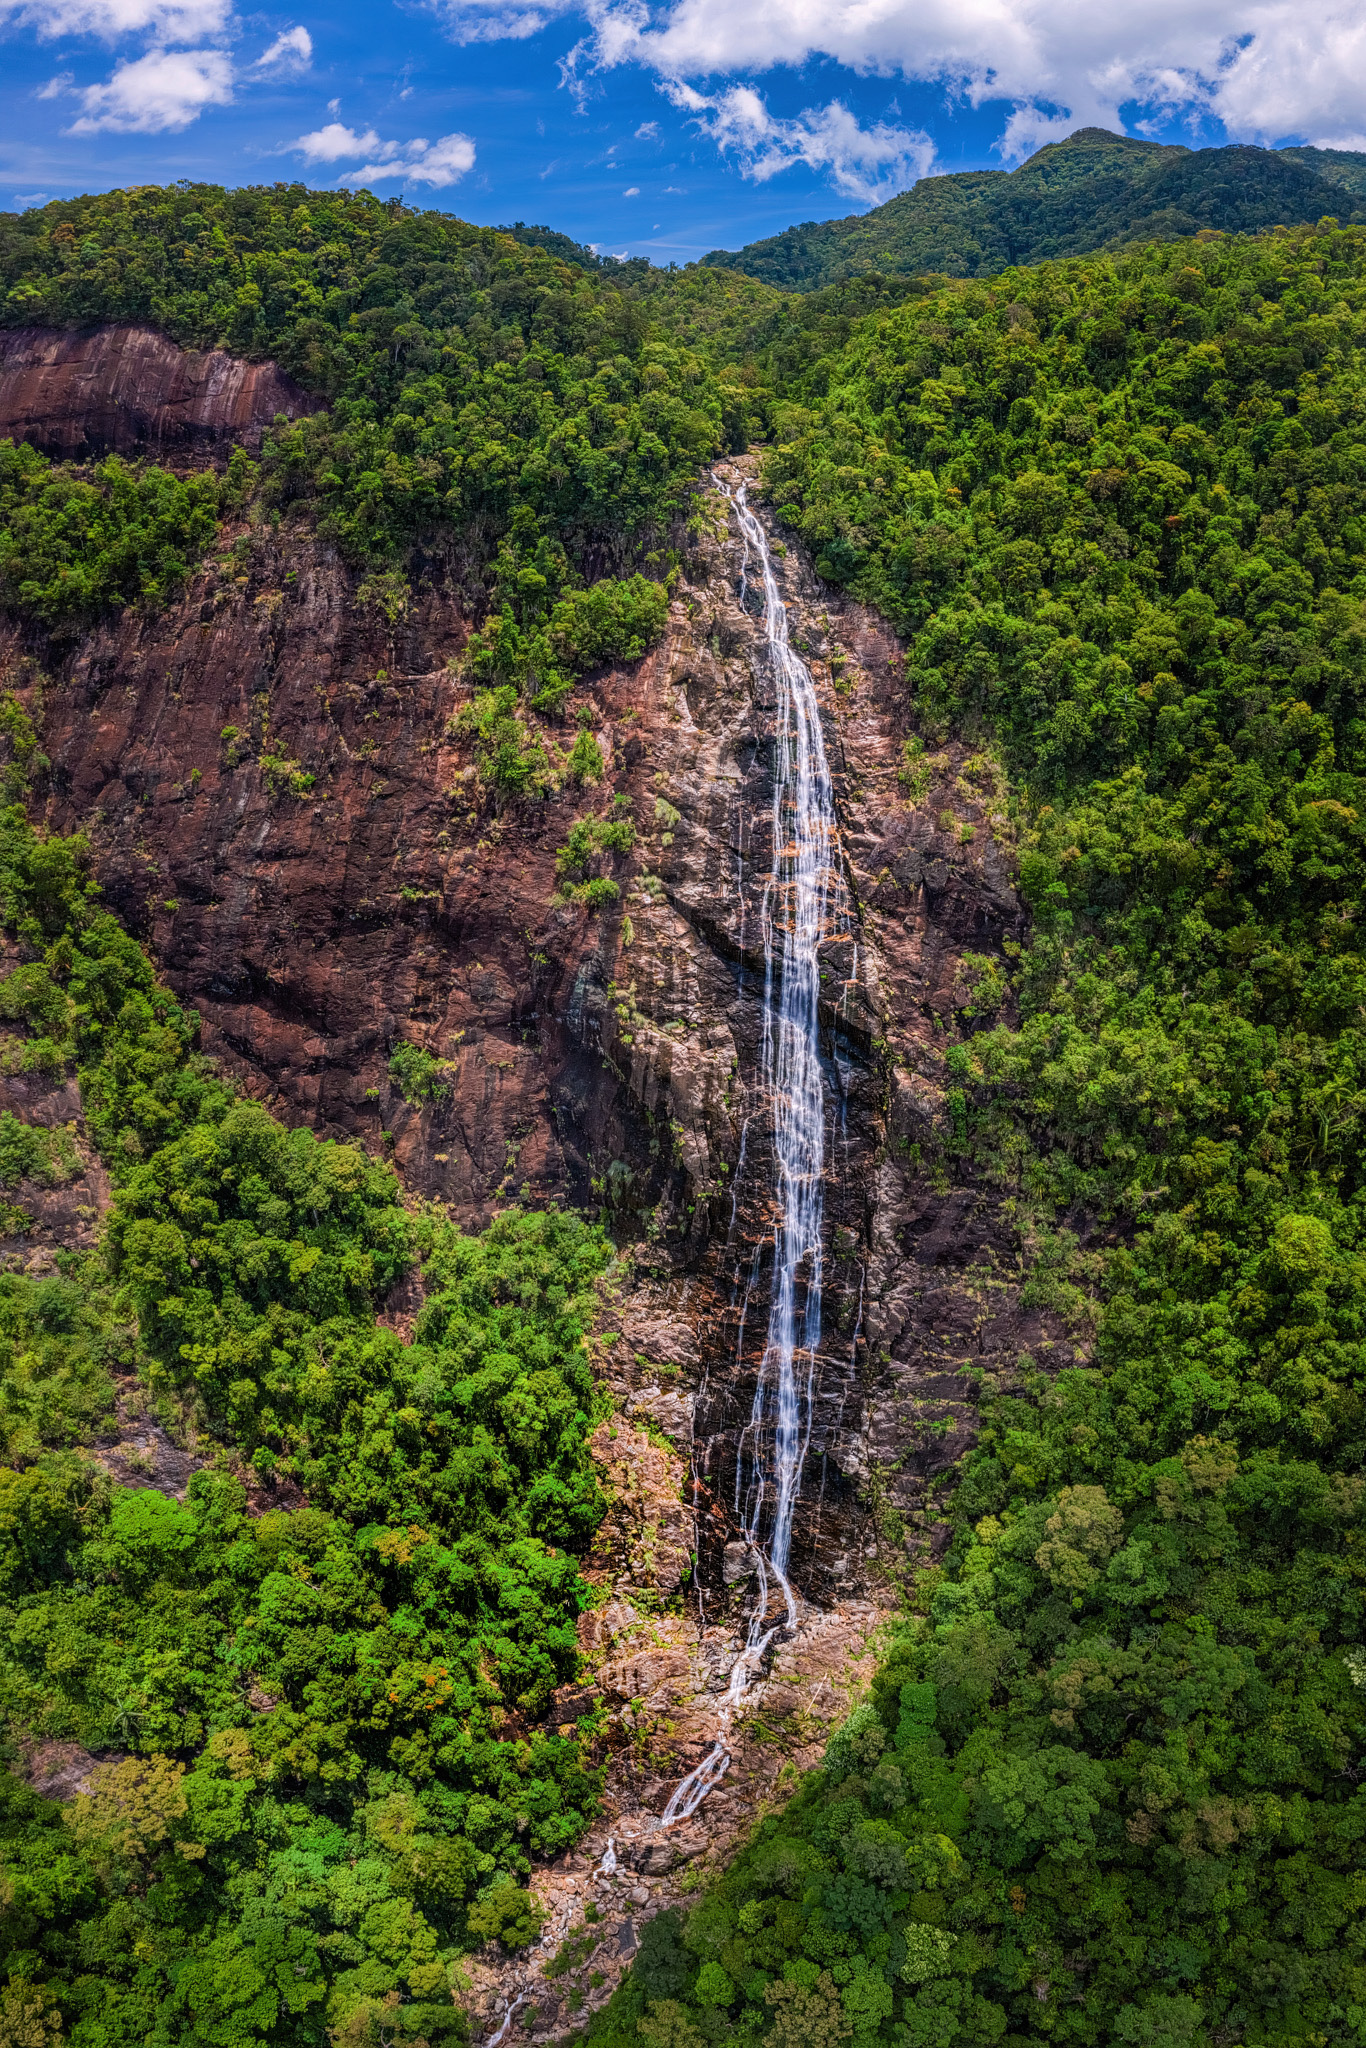 A waterfall in Bach Ma National Park, Thua Thien-Hue Province, Vietnam. Photo: Tran Luu Anh Tuan / Tuoi Tre